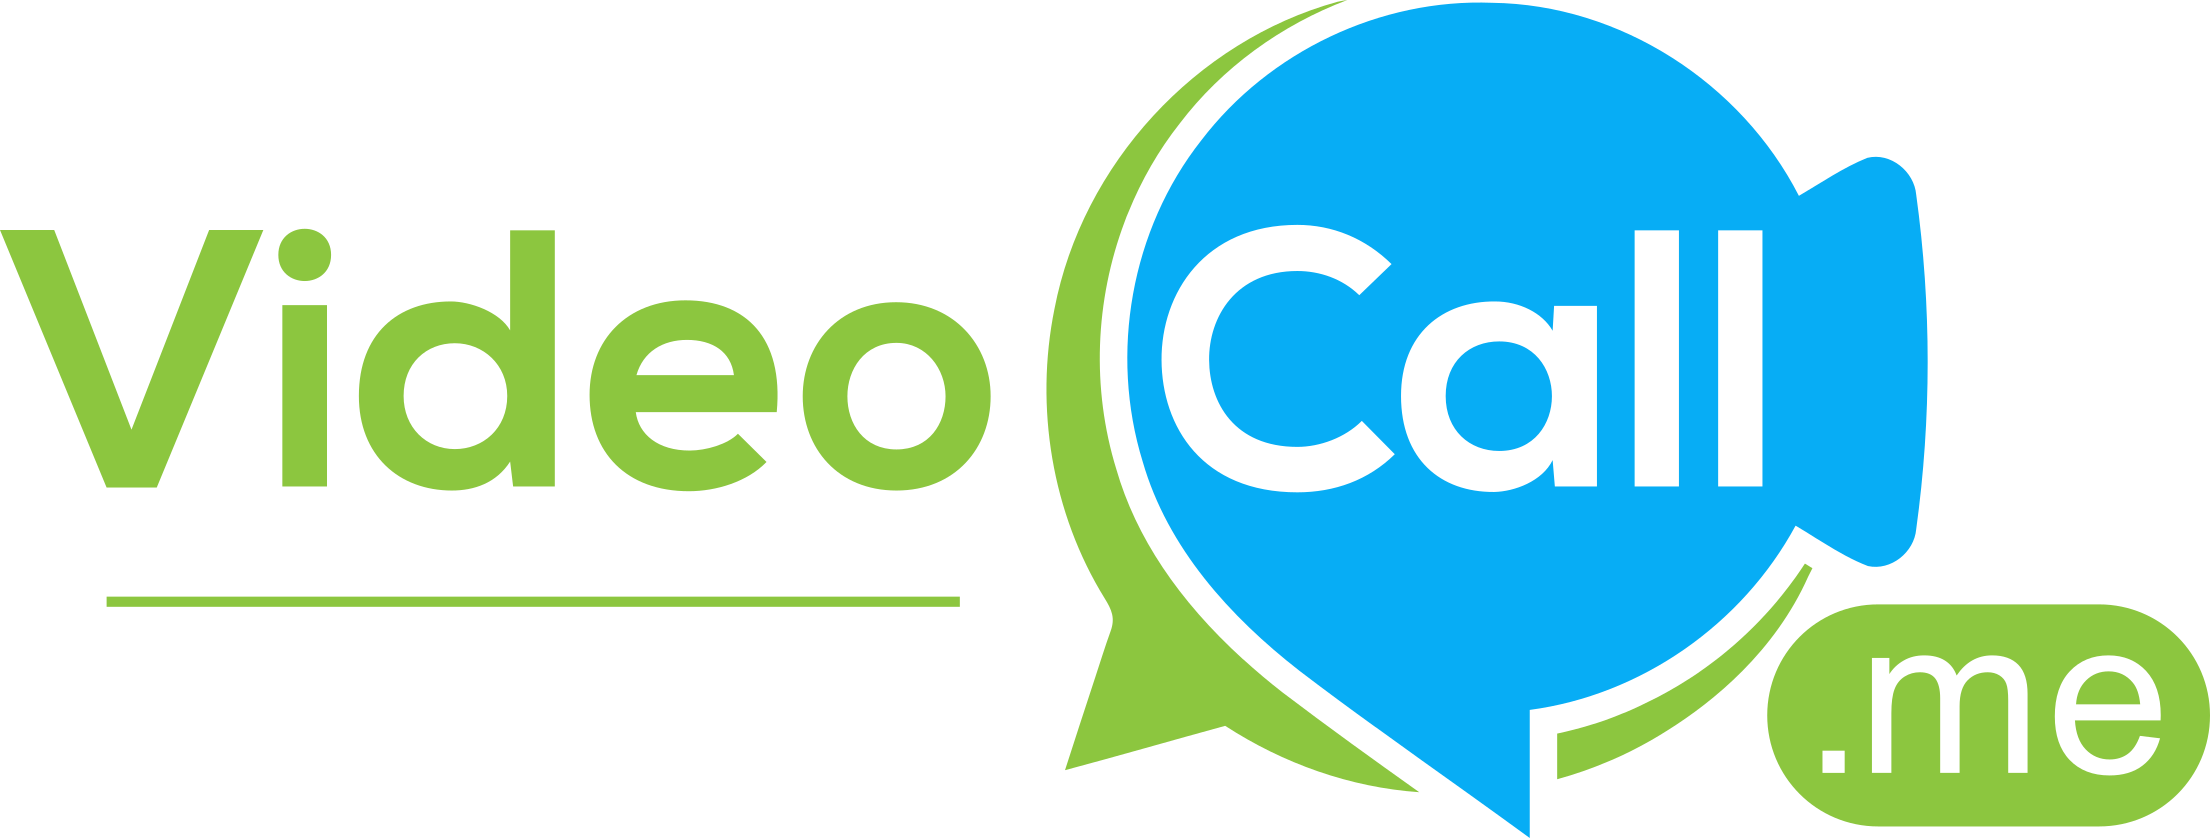 Video-Call-Me-Logo